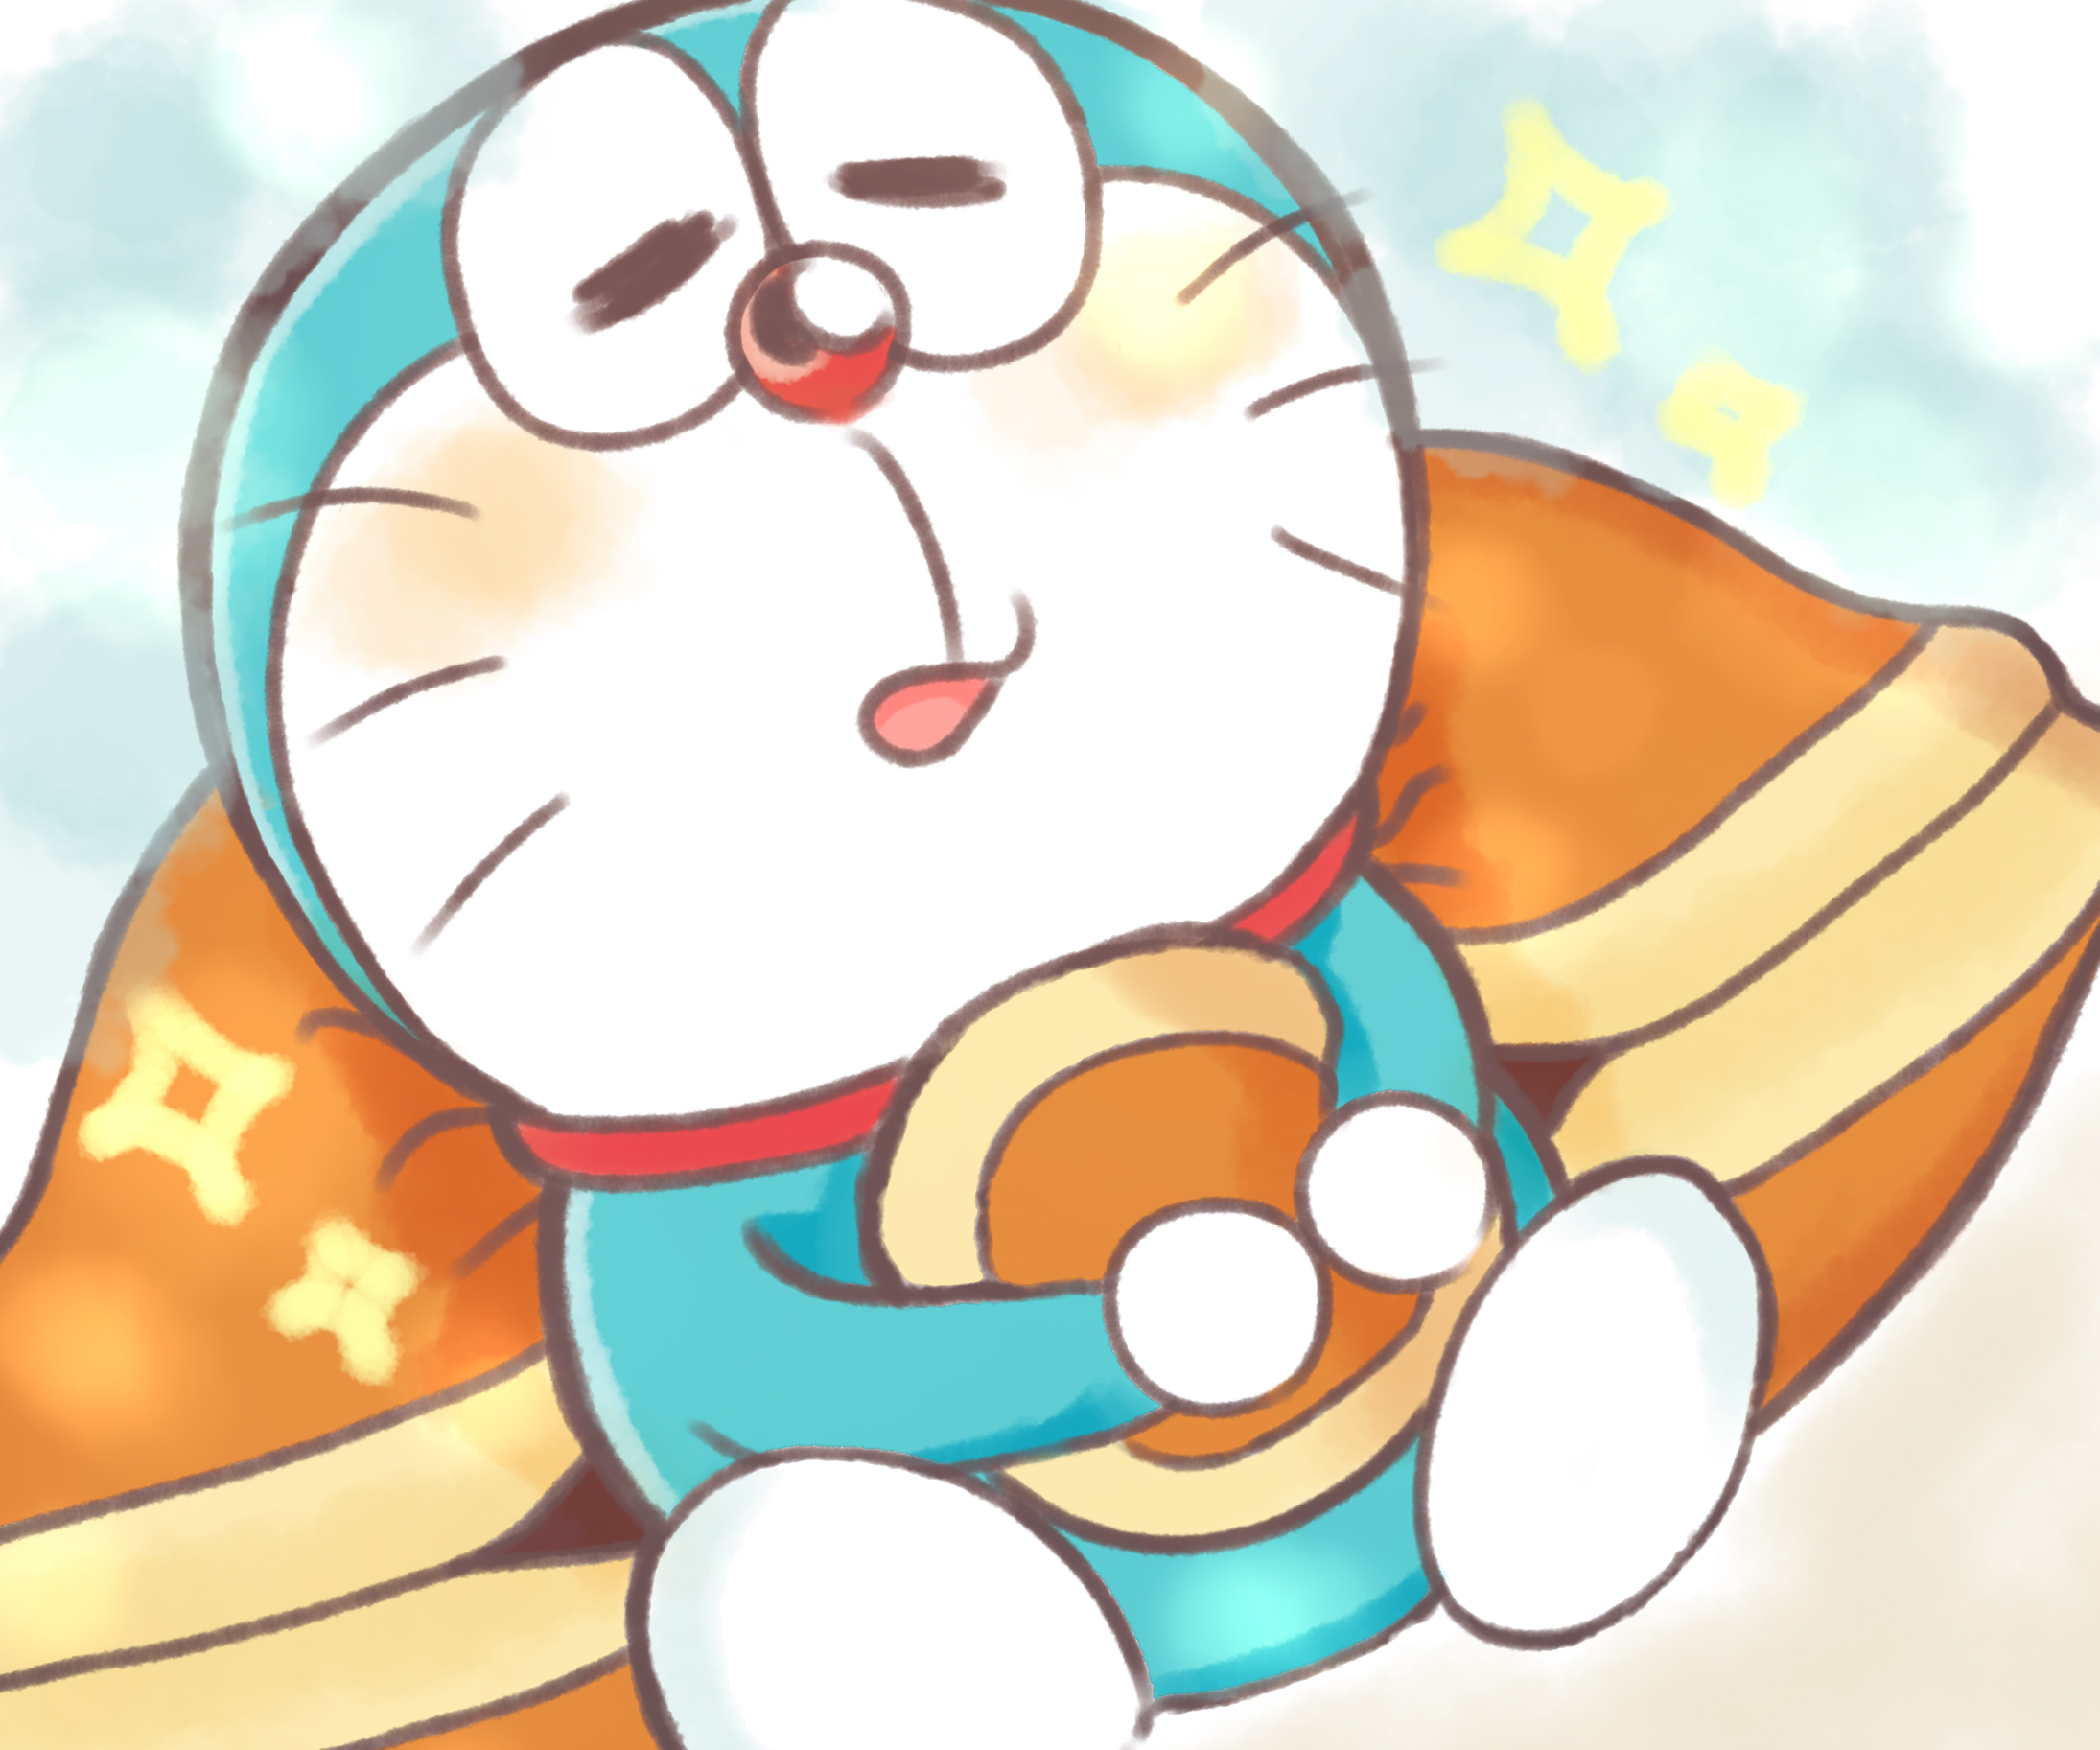 Hình vẽ Doraemon cute - Bạn có thích vẽ tranh hay không? Hãy xem qua hình ảnh này và thưởng thức những bức tranh vẽ Doraemon xinh đẹp và đáng yêu nhất. Hãy cùng thử sức với một bức tranh Doraemon bạn nhé!